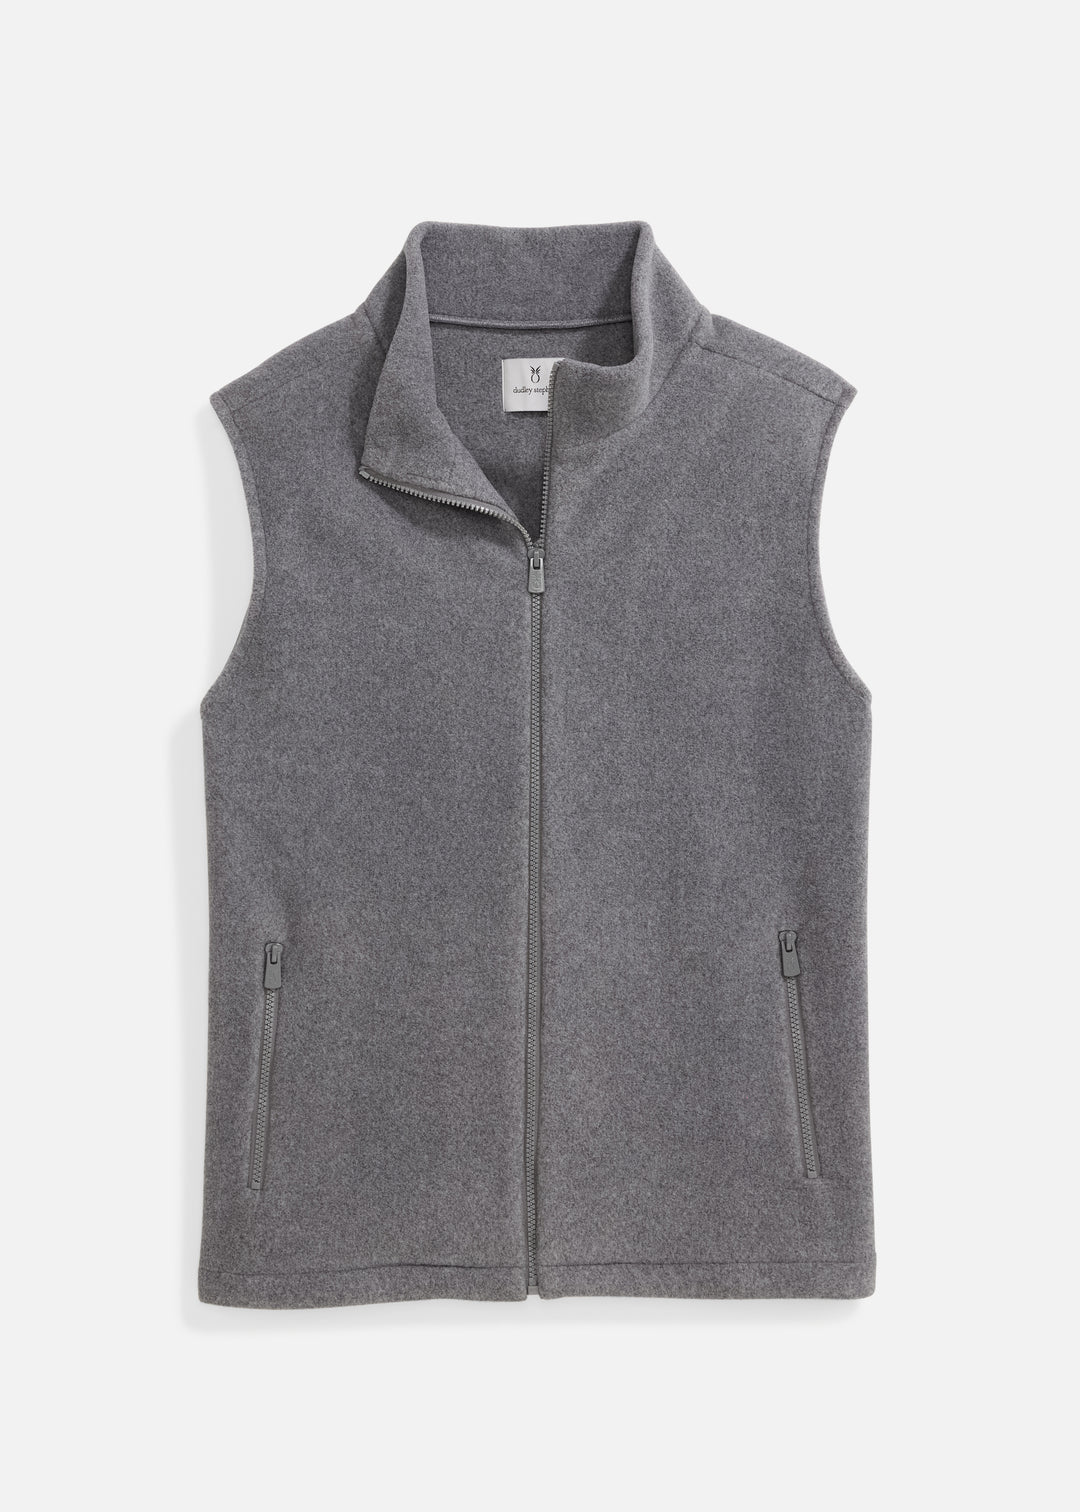 Men's Salisbury Vest in Double Layer Vello Fleece (Charcoal Grey)